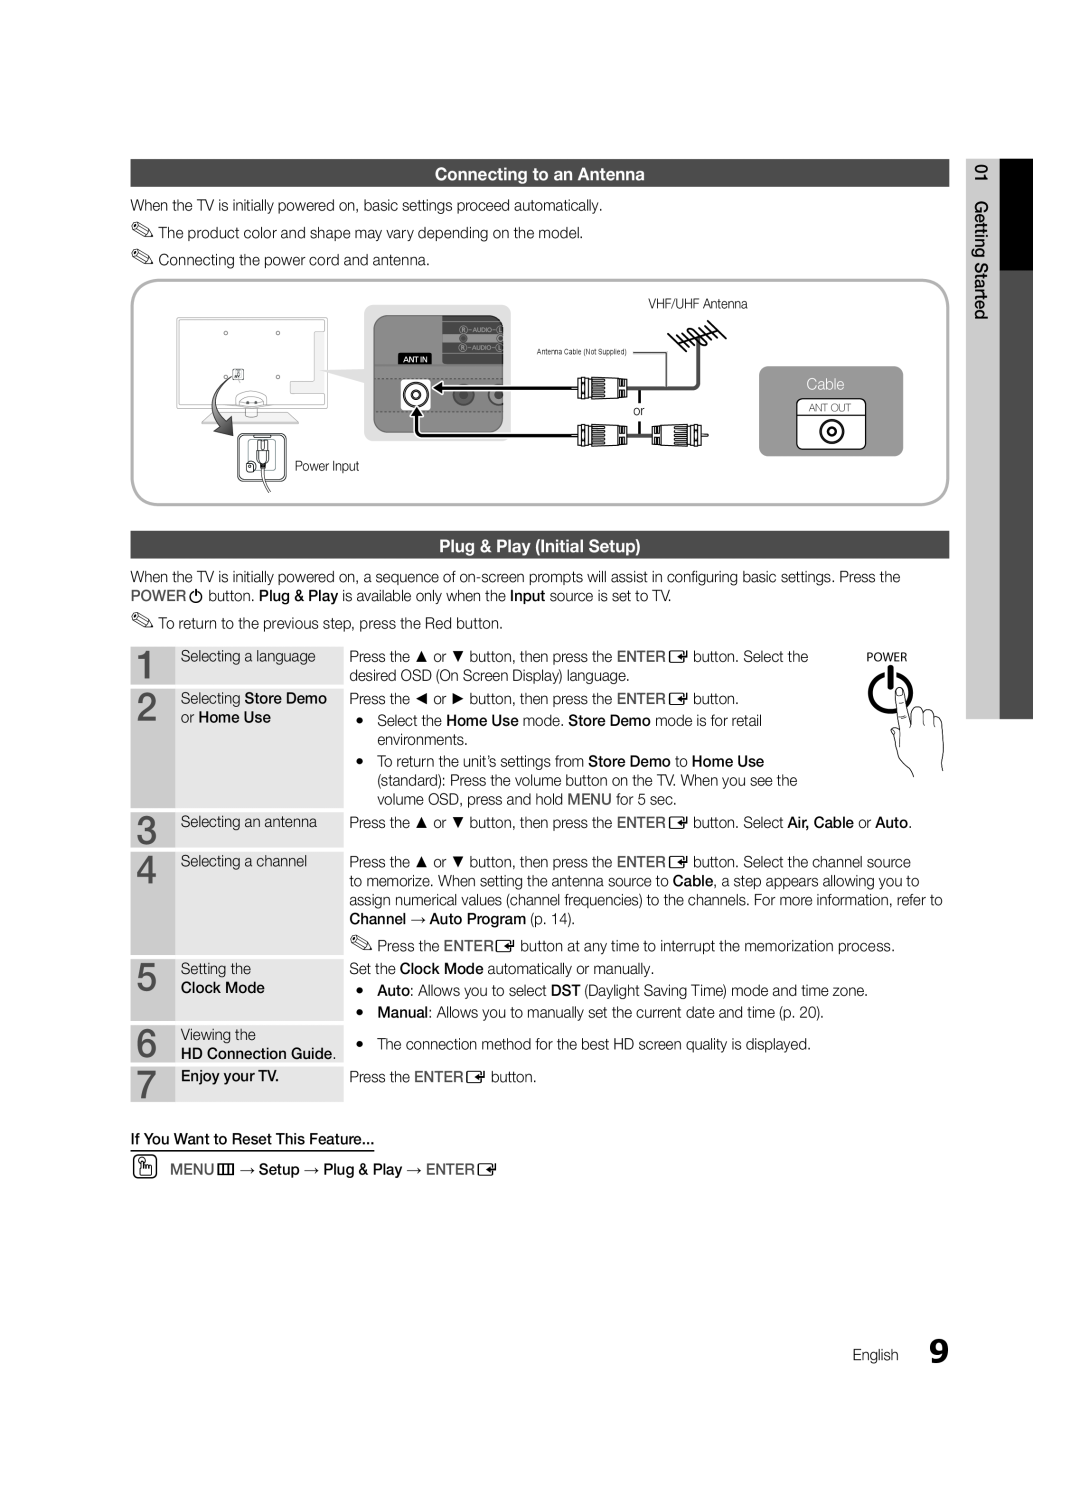 Samsung UN40C6500, UN55C6400, UN46C6400 user manual Connecting to an Antenna, Plug & Play Initial Setup, Cable 